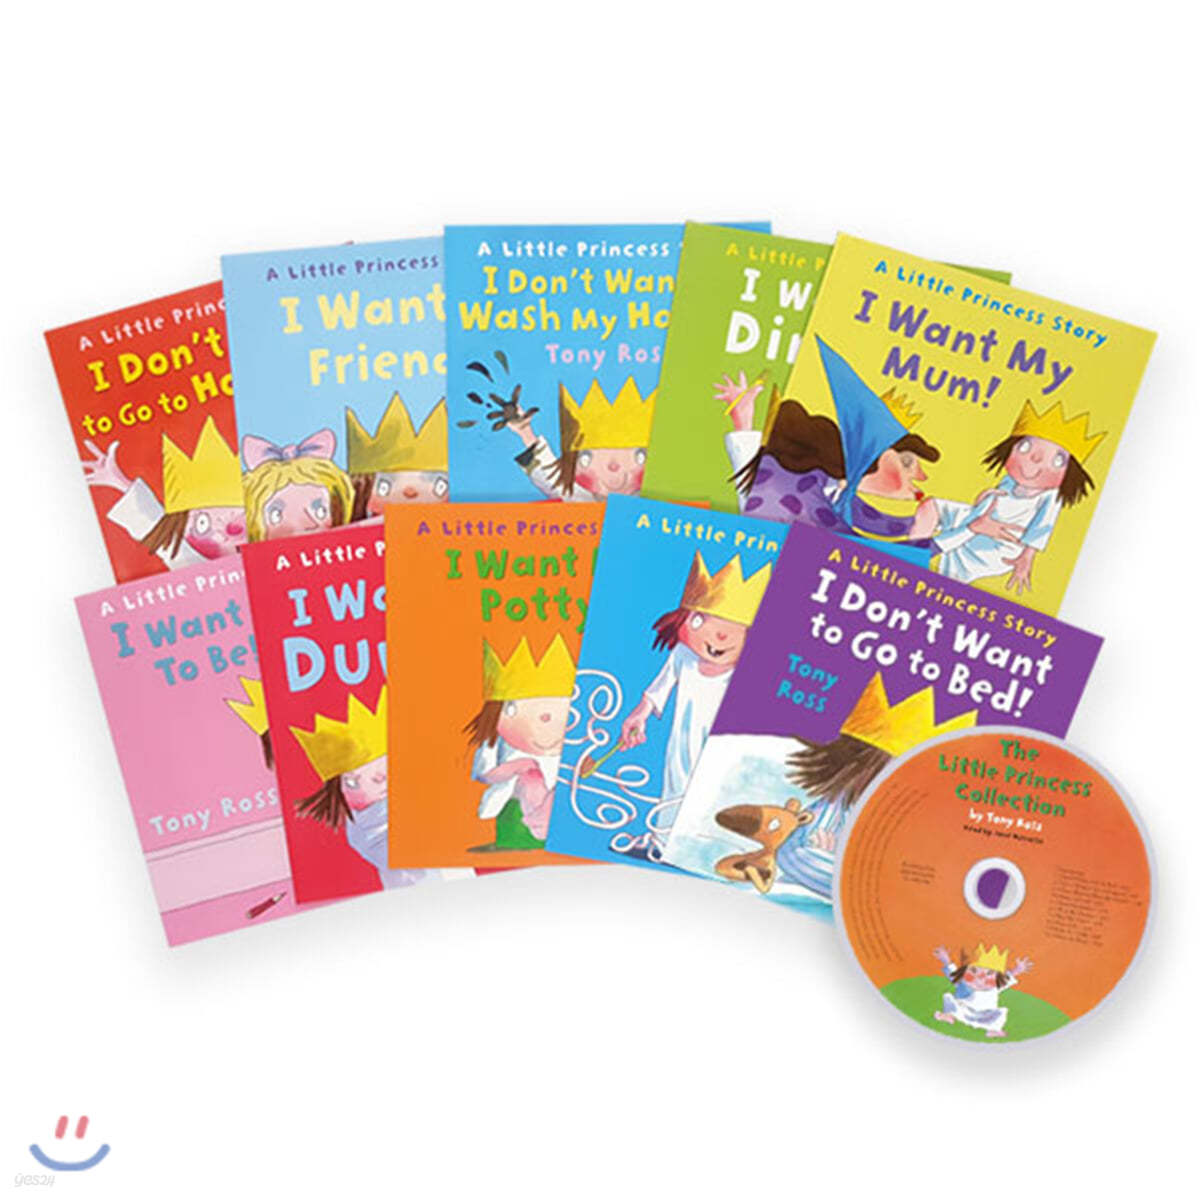 리틀 프린세스 원서 & CD 세트 : Little Princess 10 Books + CD Set